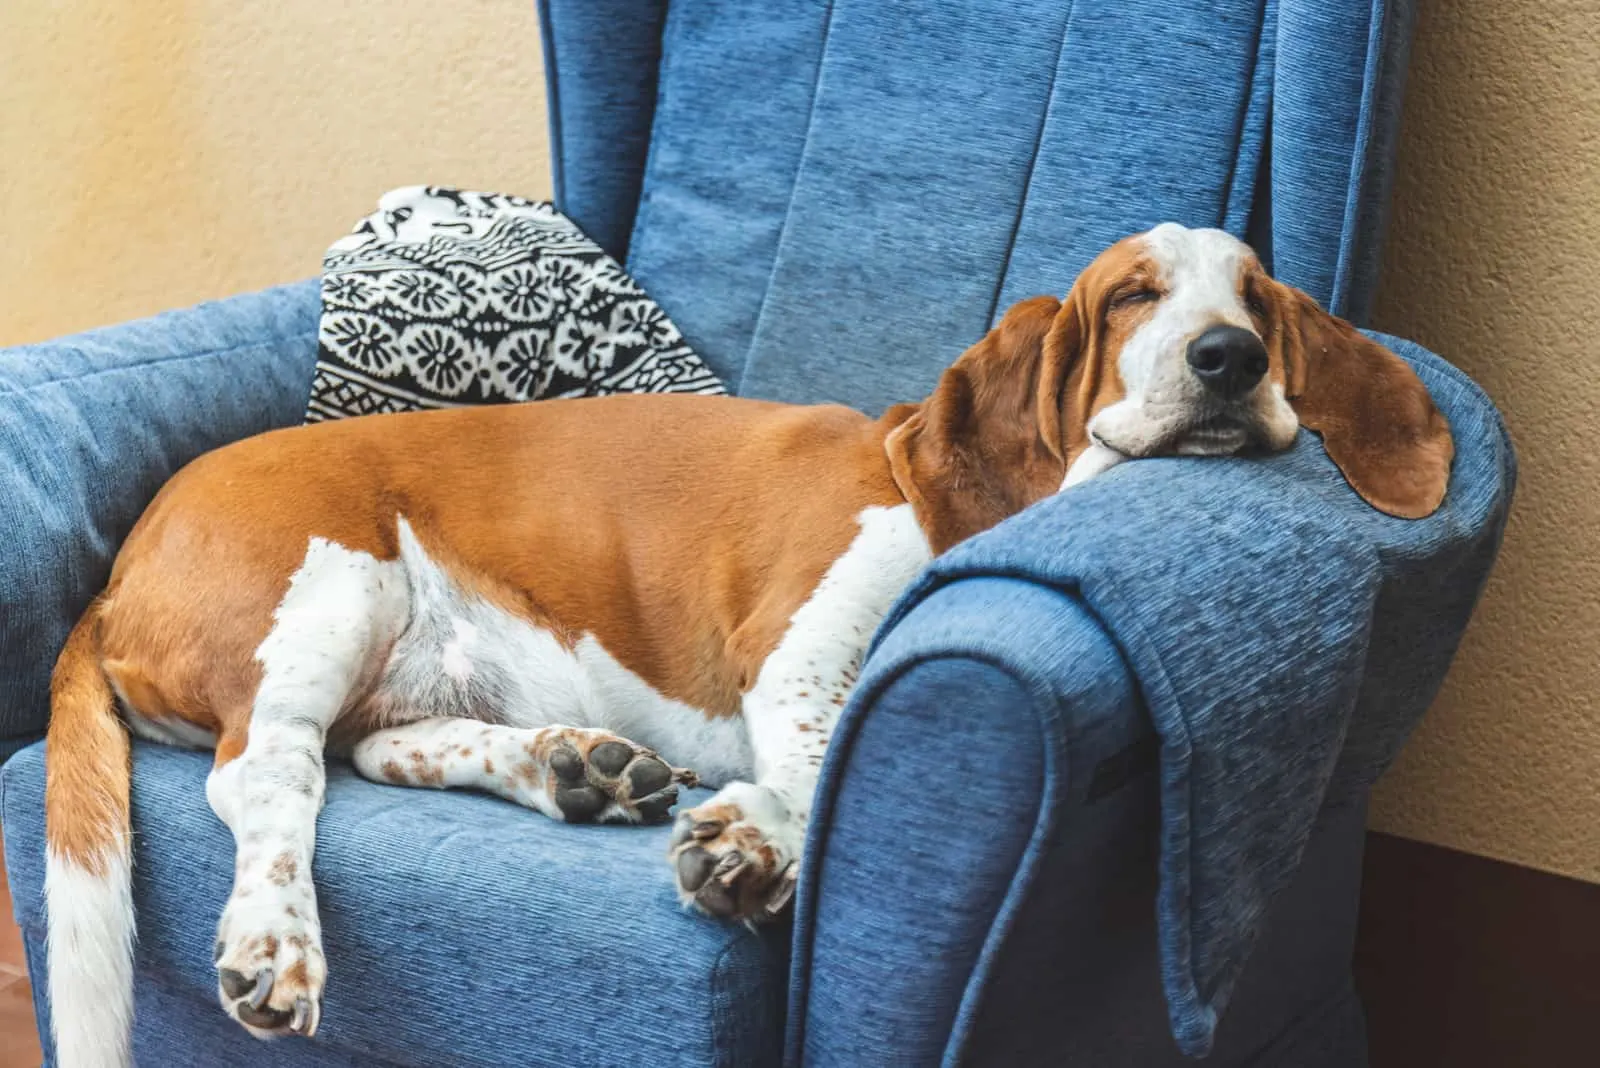 the basset hound sleeps on a blue armchair